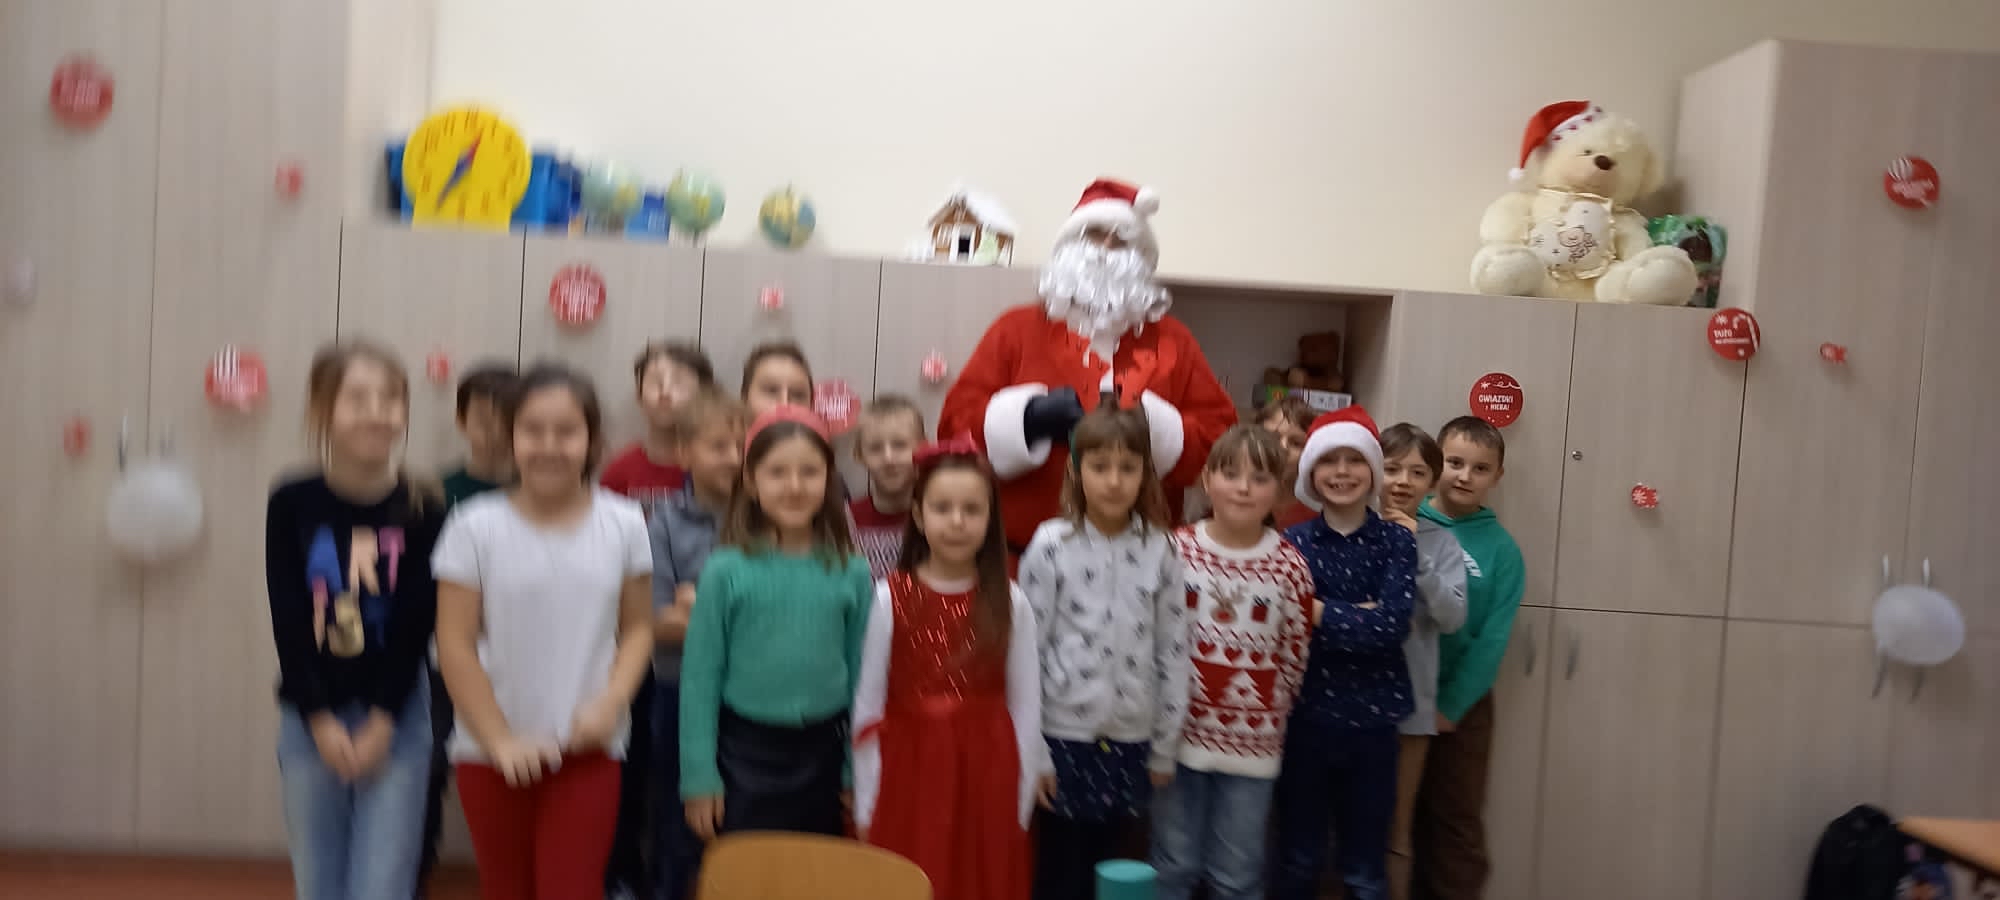 Święty Mikołaj z dziećmi pozują do zdjęcia.